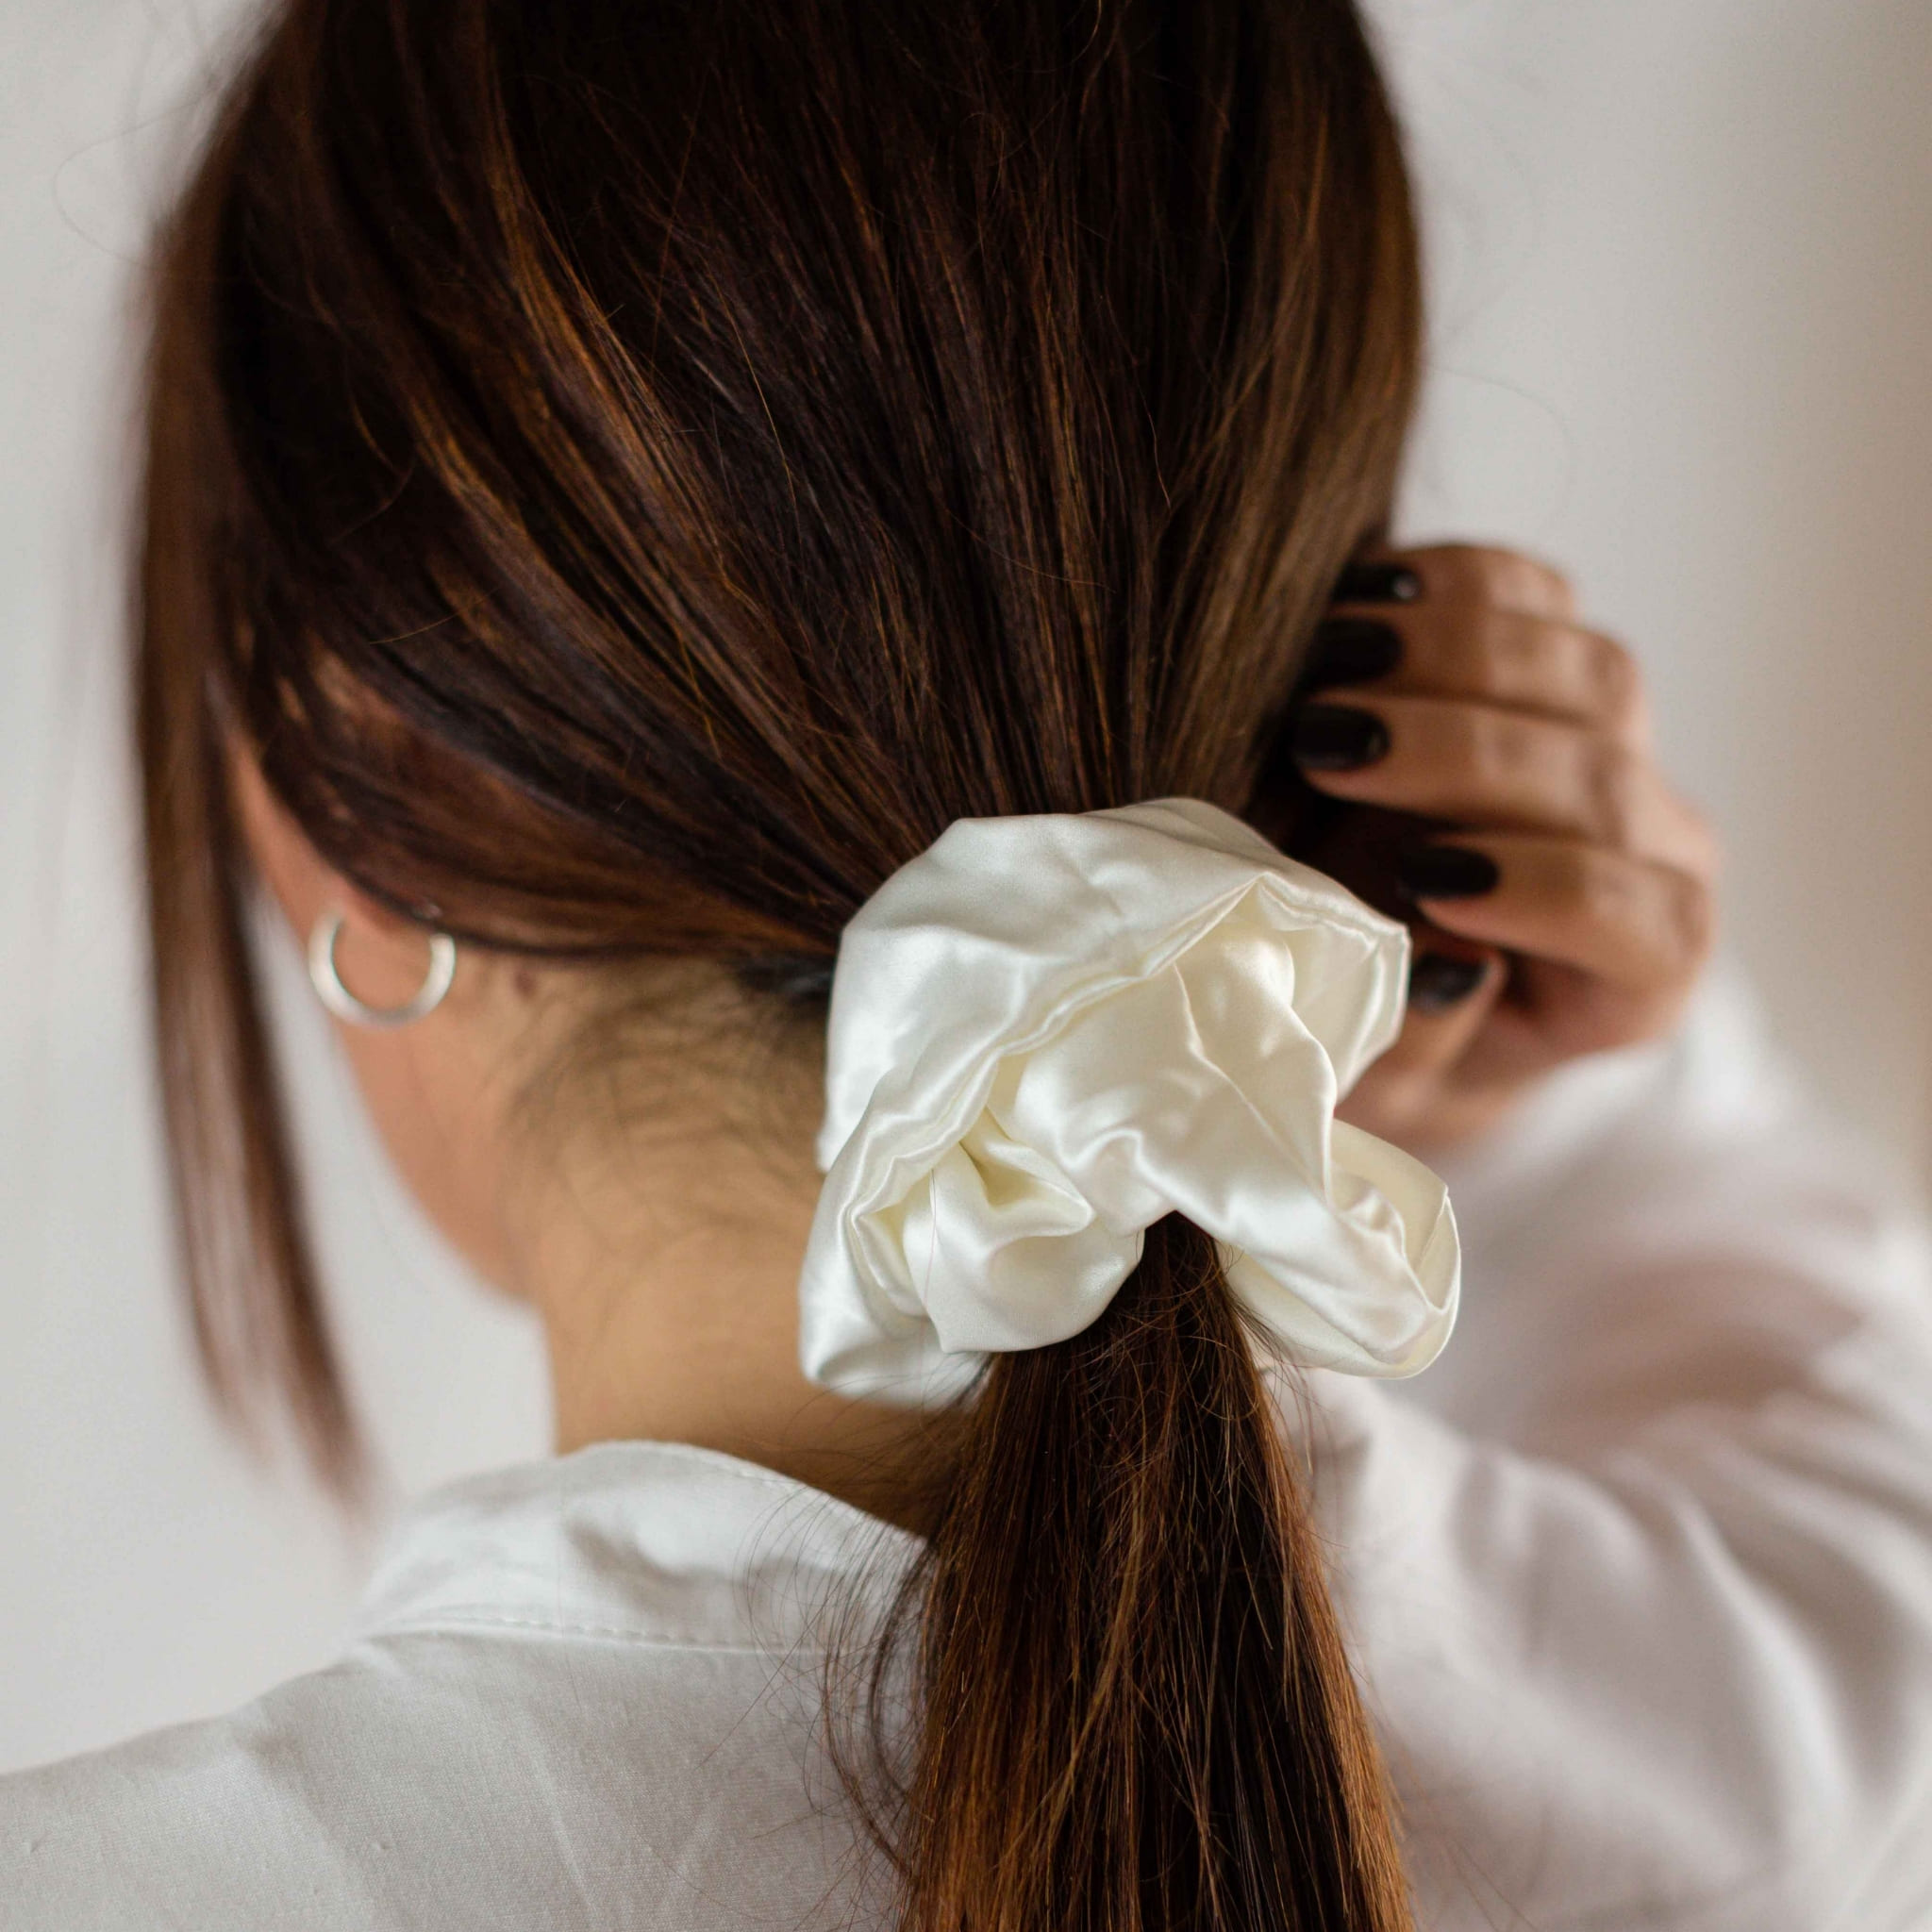 Come non rovinare i capelli con gli elastici di seta - Il Dispari Quotidiano